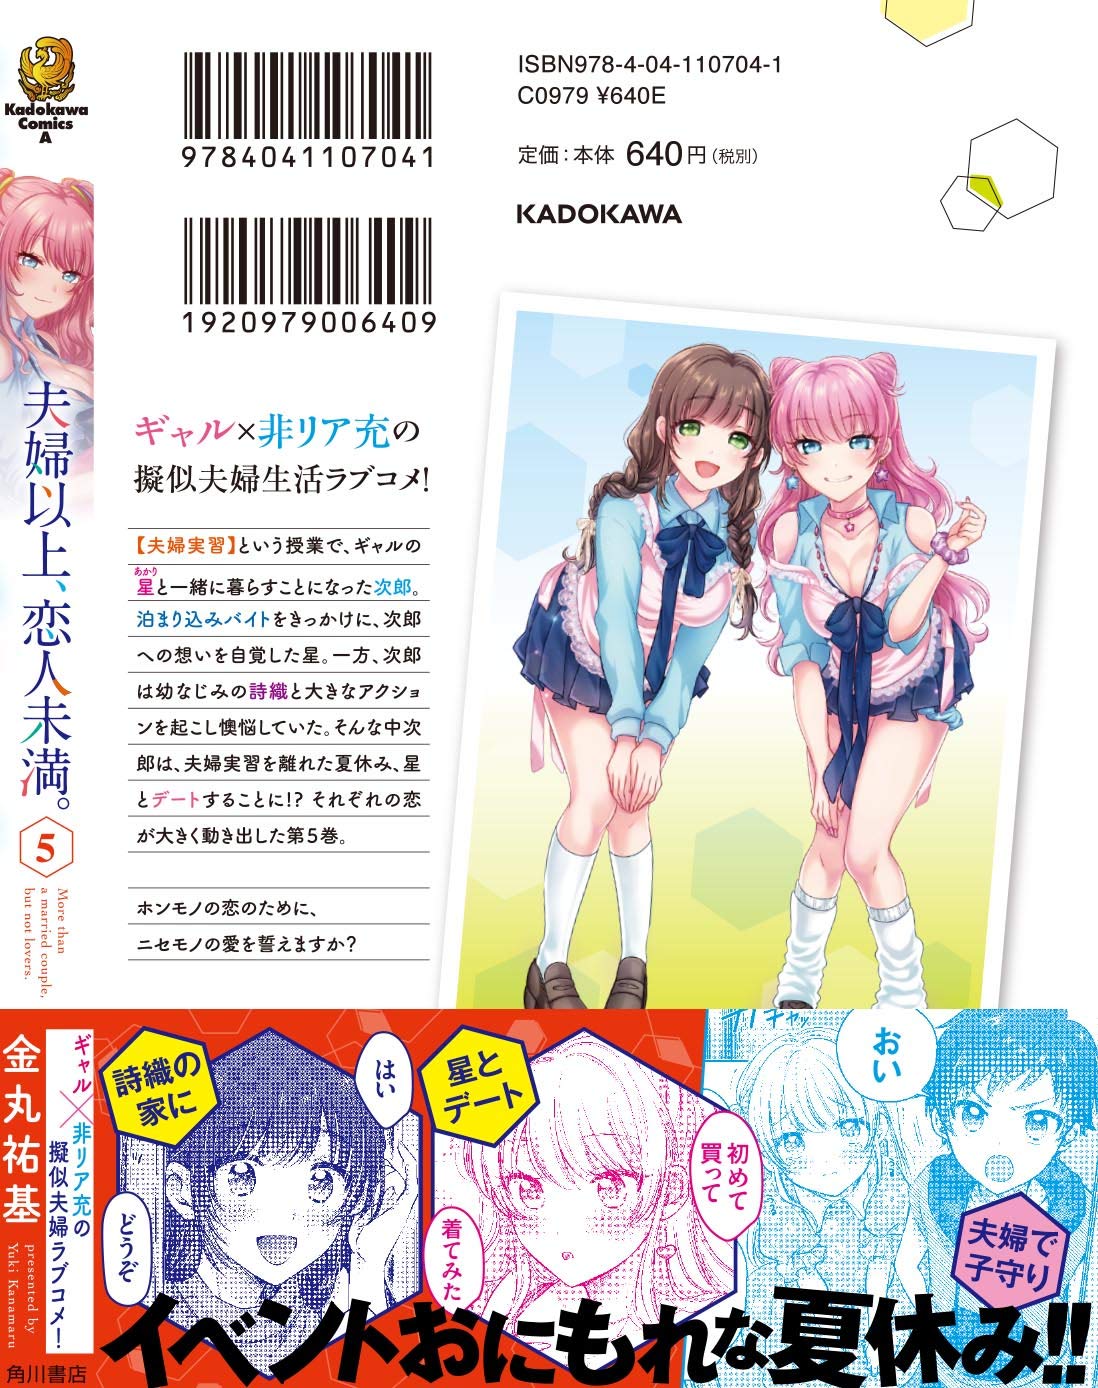 Read Fuufu Ijou, Koibito Miman. by Yuki Kanamaru Free On MangaKakalot -  Chapter 65